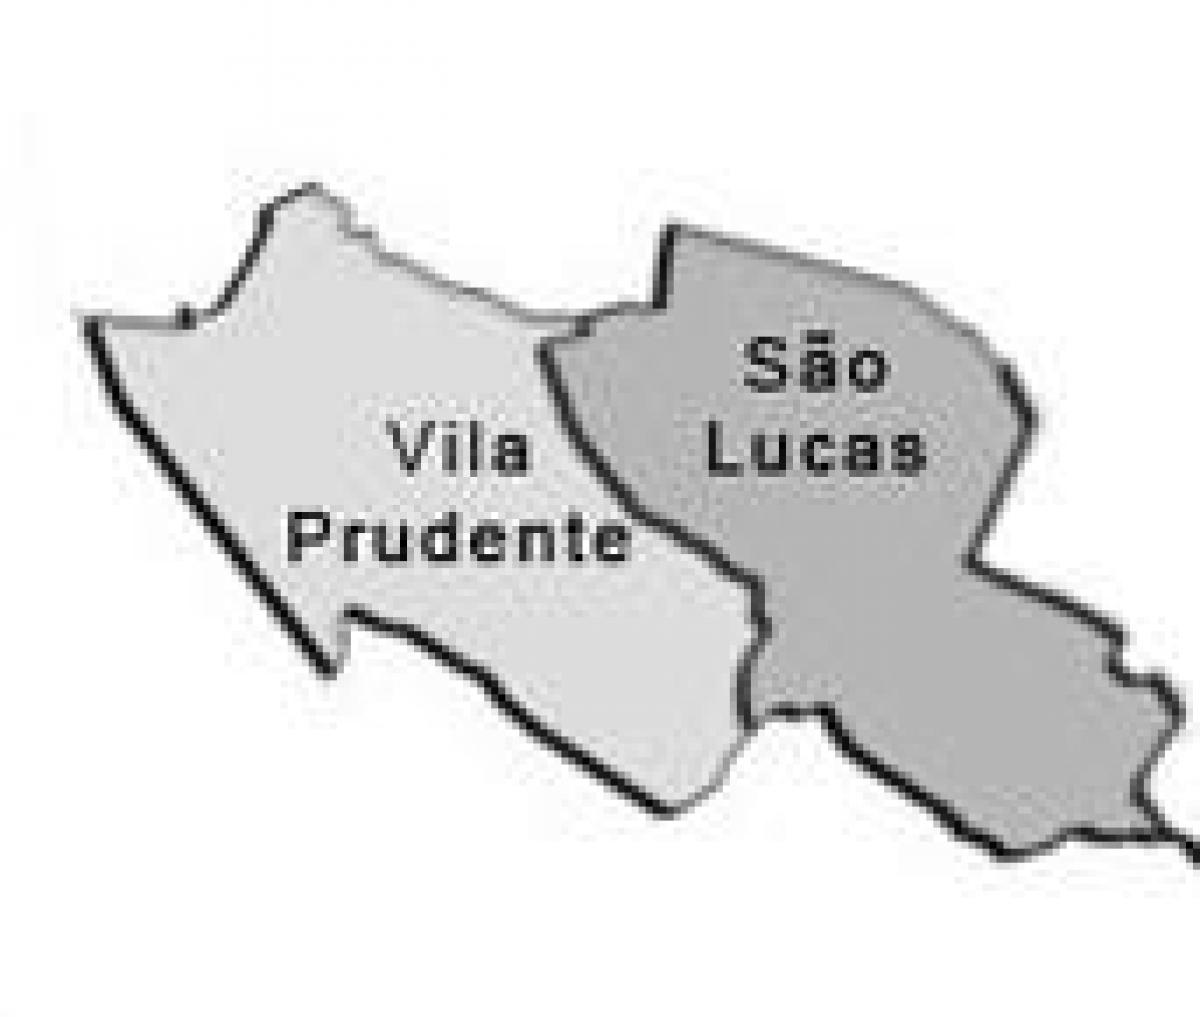 Kartta Vila Prudente sub-prefektuurissa